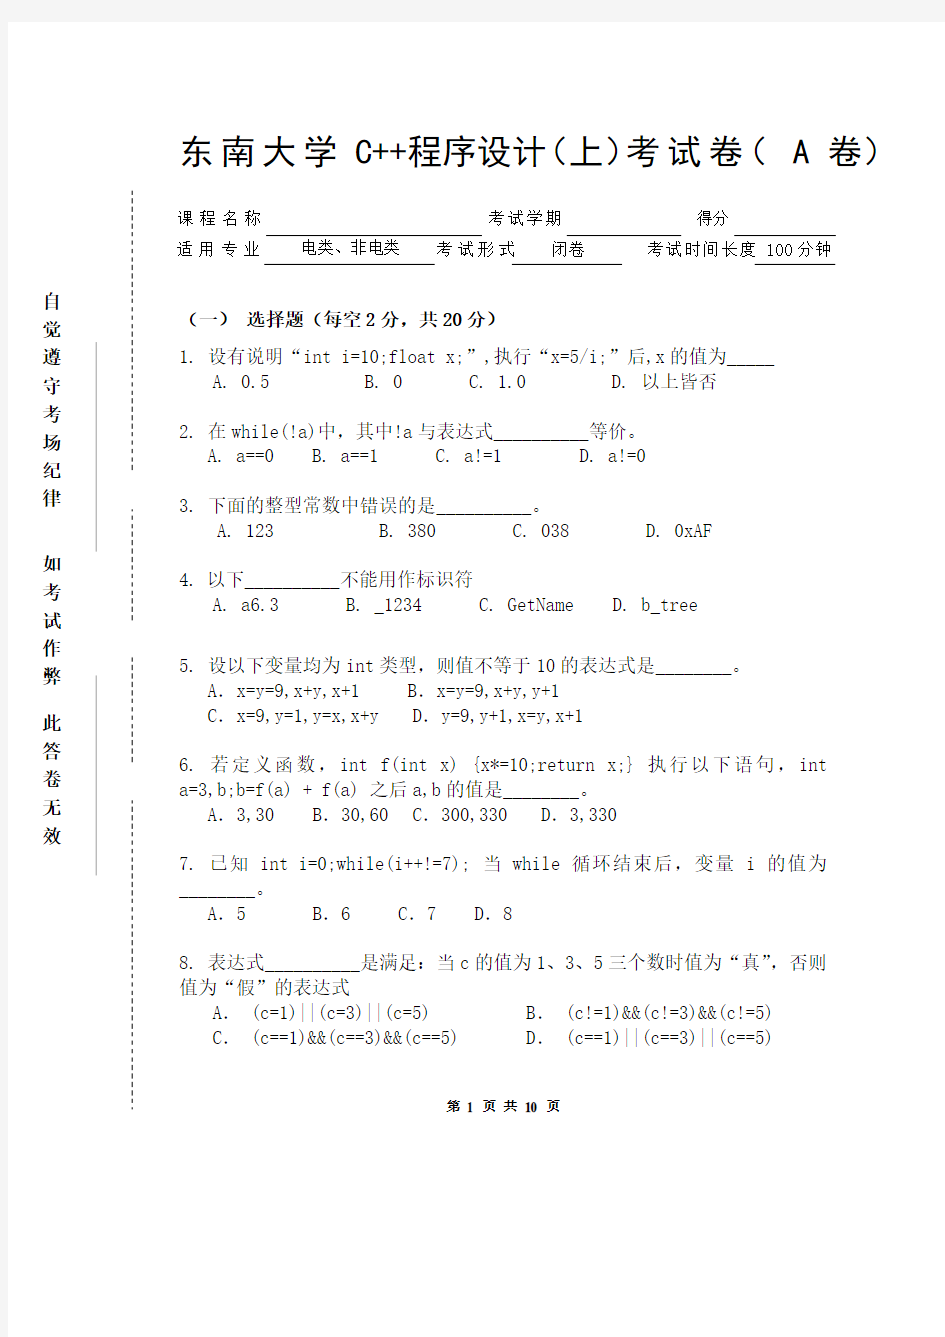 东南大学C++程序设计(上)考试卷( A 卷)